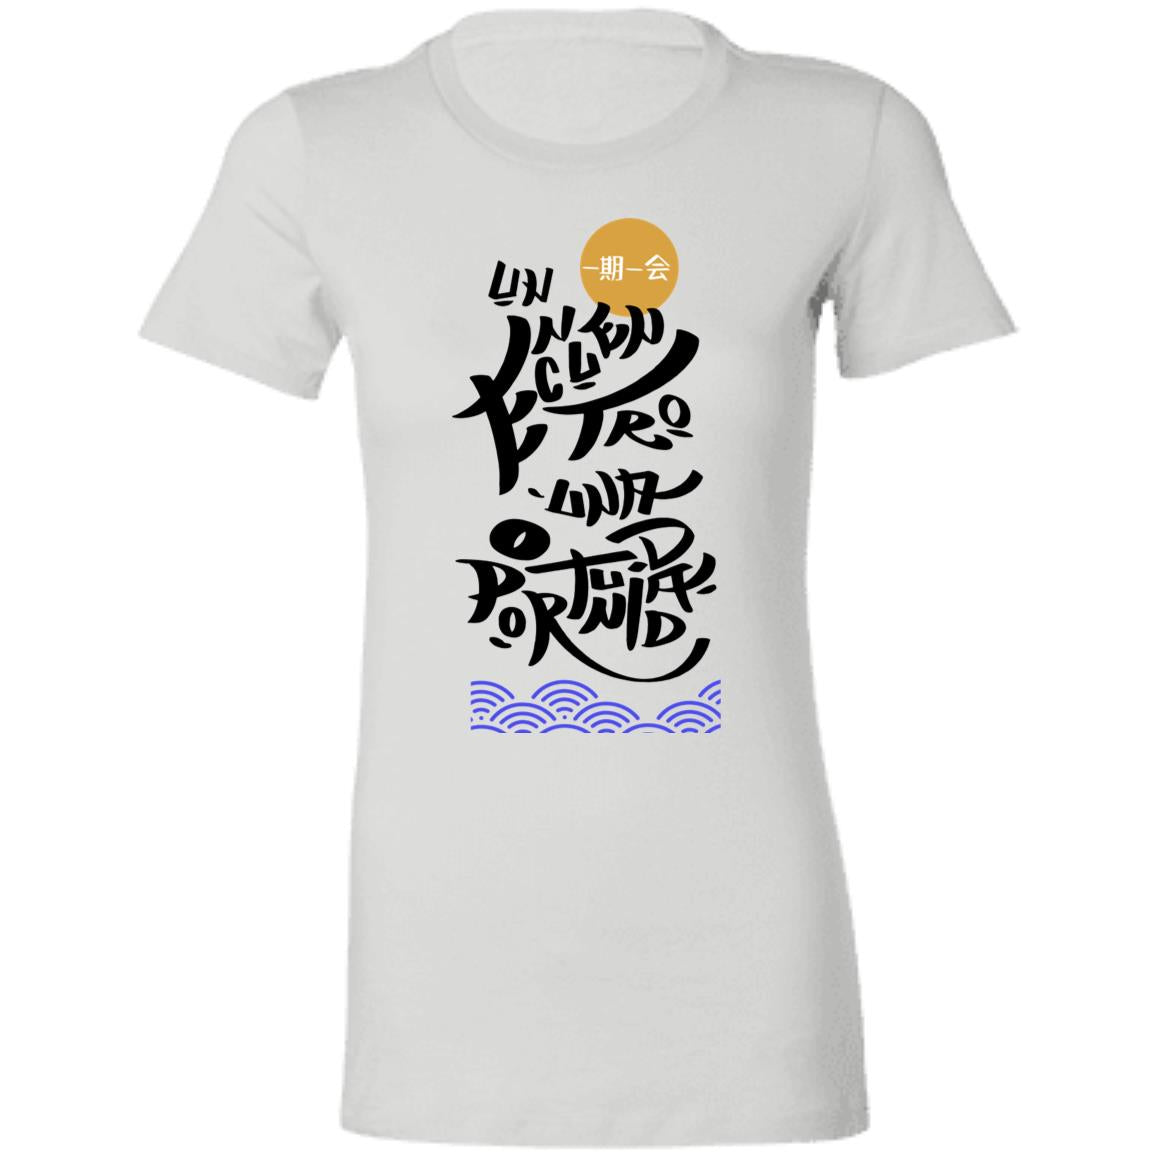 Ladies' Favorite Women's T-Shirt, Un Encuentro - LOS GUSANOS